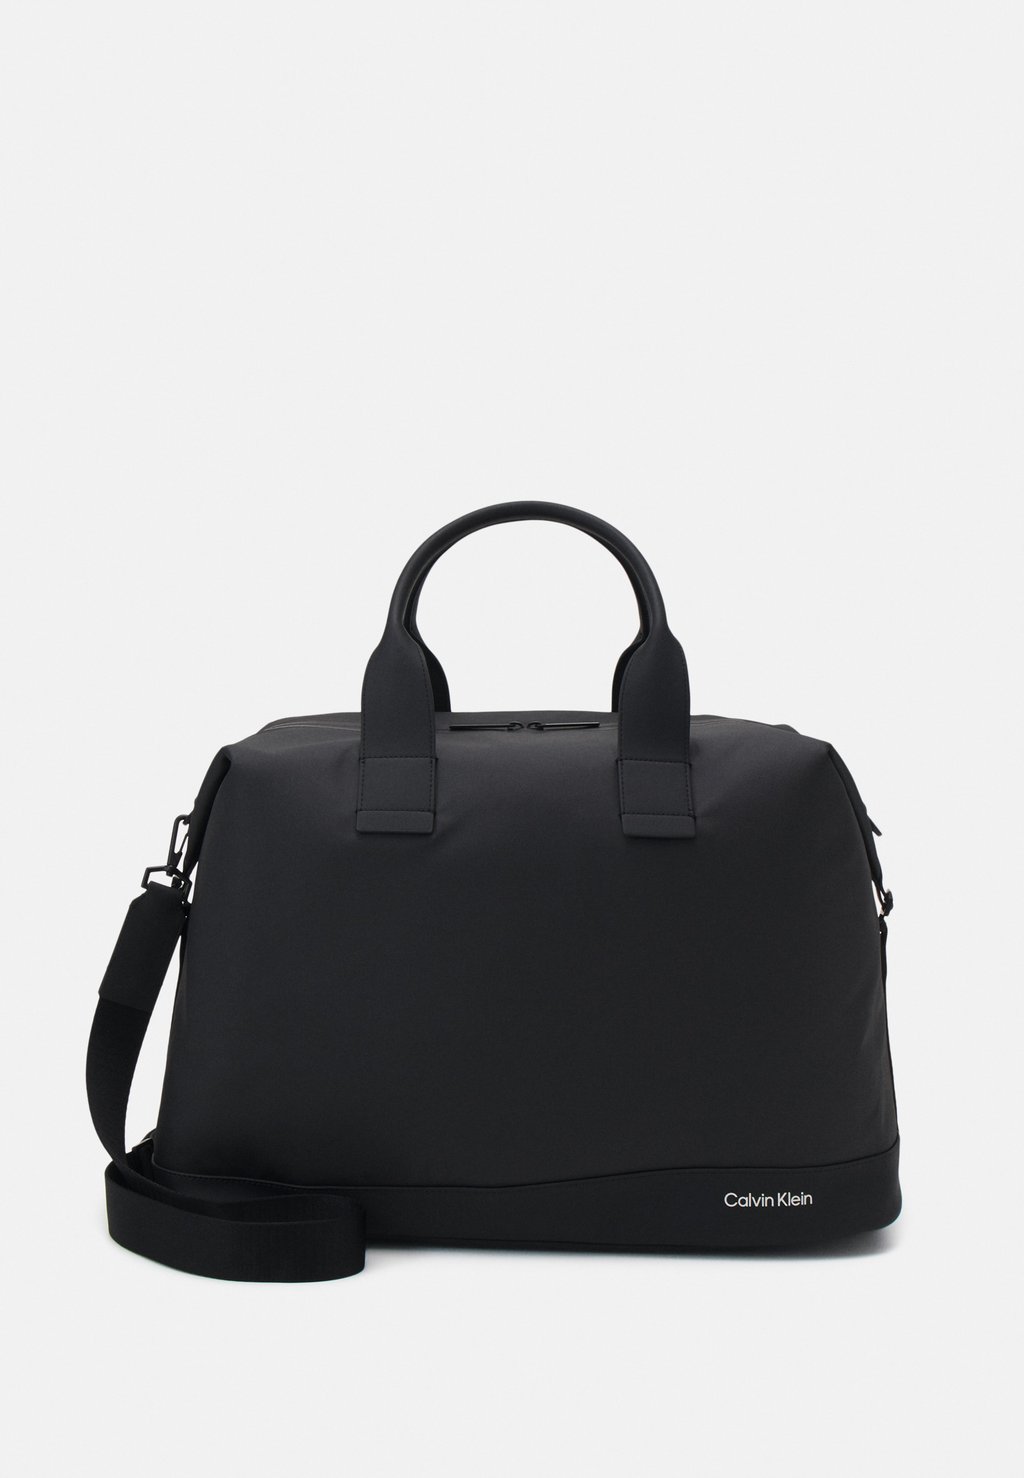 Сумка Weekender Calvin Klein, цвет black сумка weekender ck must weekender mono calvin klein цвет classic mono black